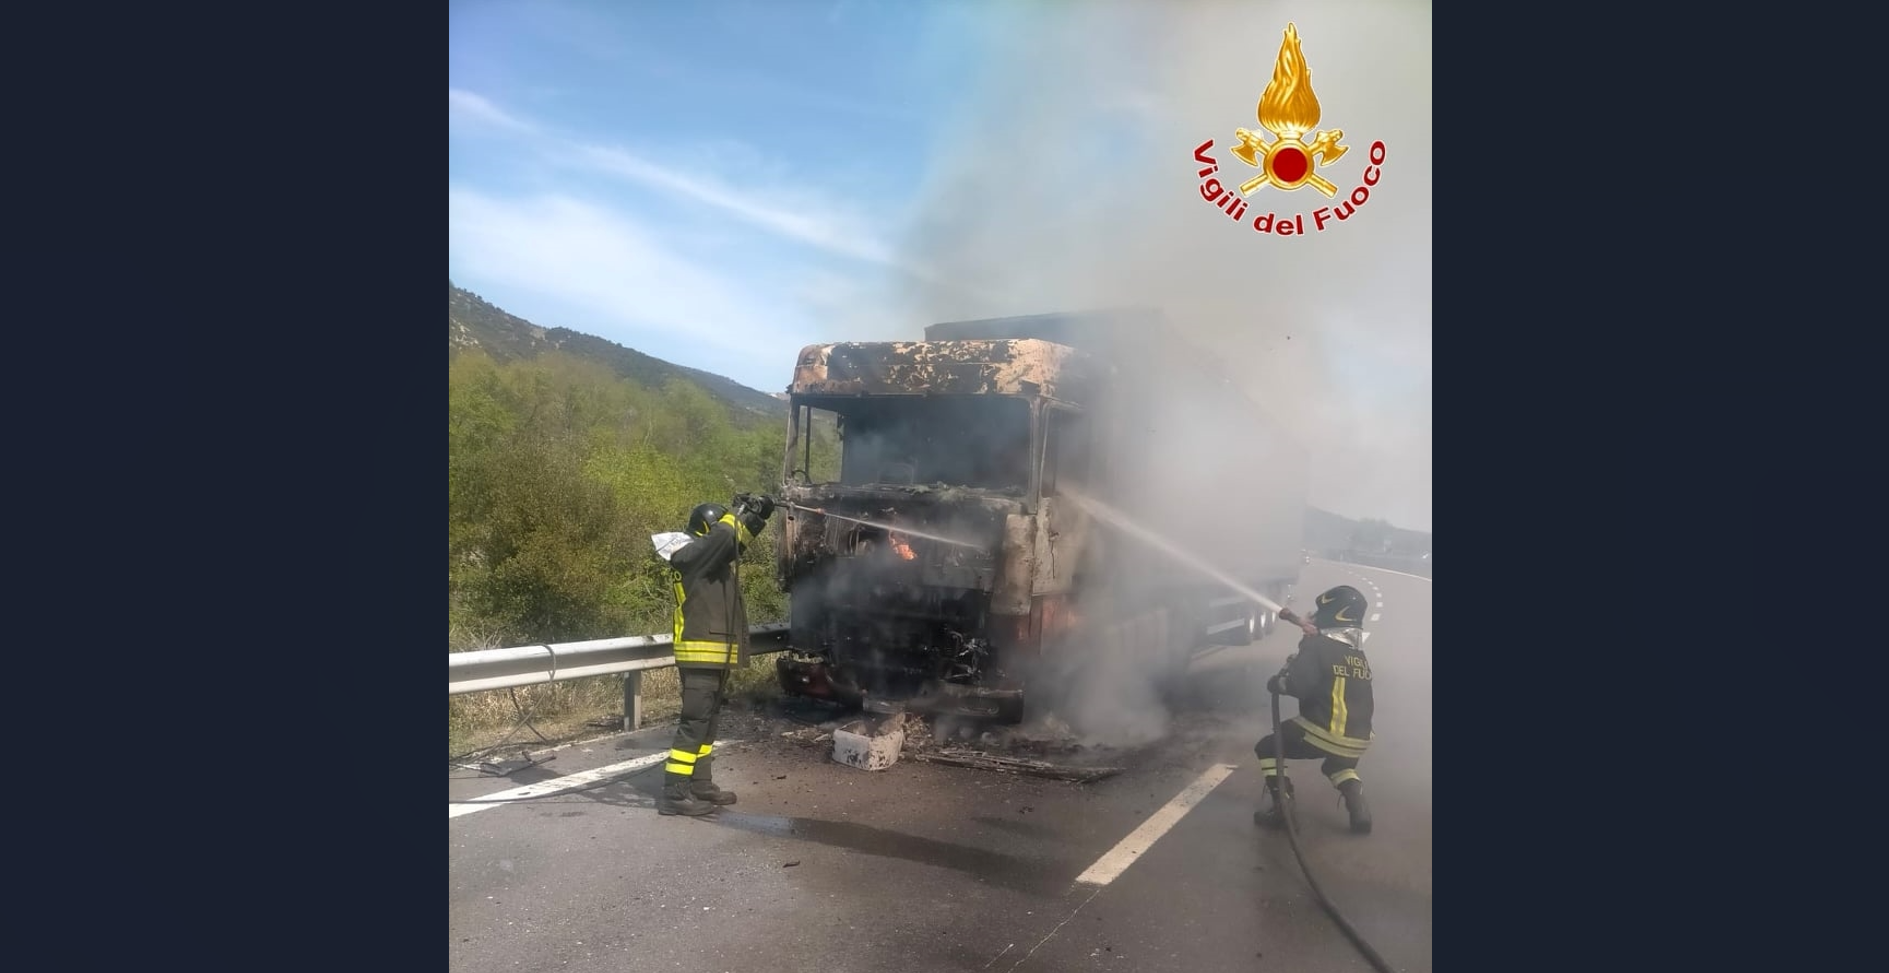 In fiamme nei pressi di Calciano il vano cabina di un camion che trasportava carbonato di calcio, intervento dei Vigili del Fuoco